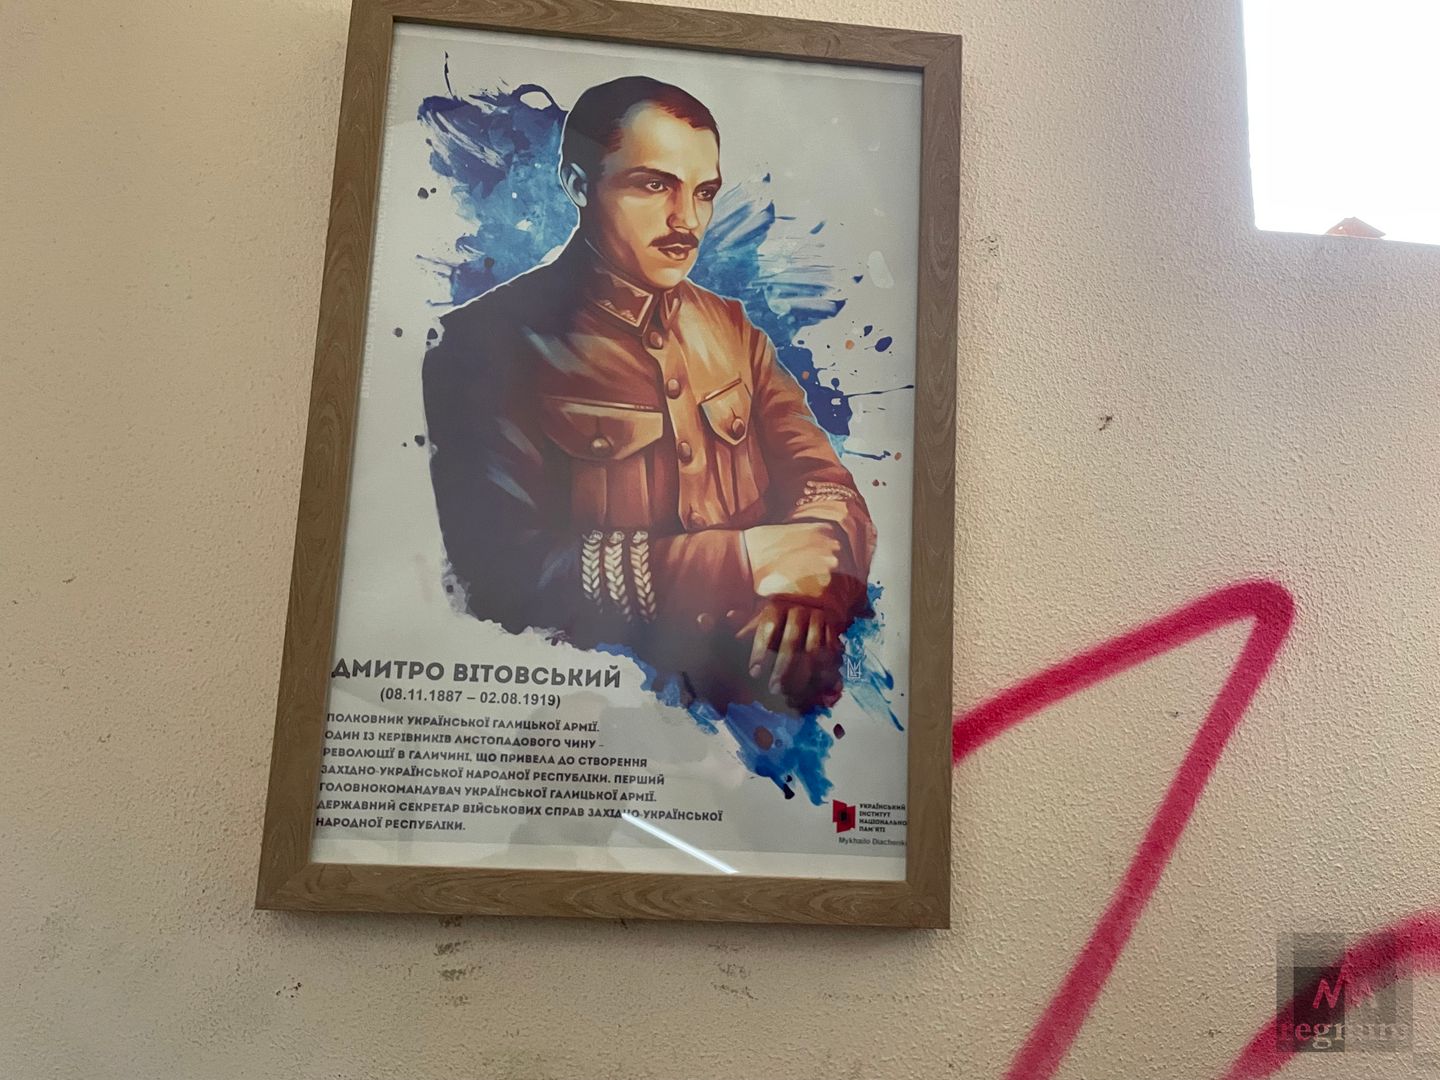 Комнаты украшены портретами исторических «героев» украинской мифологической истории